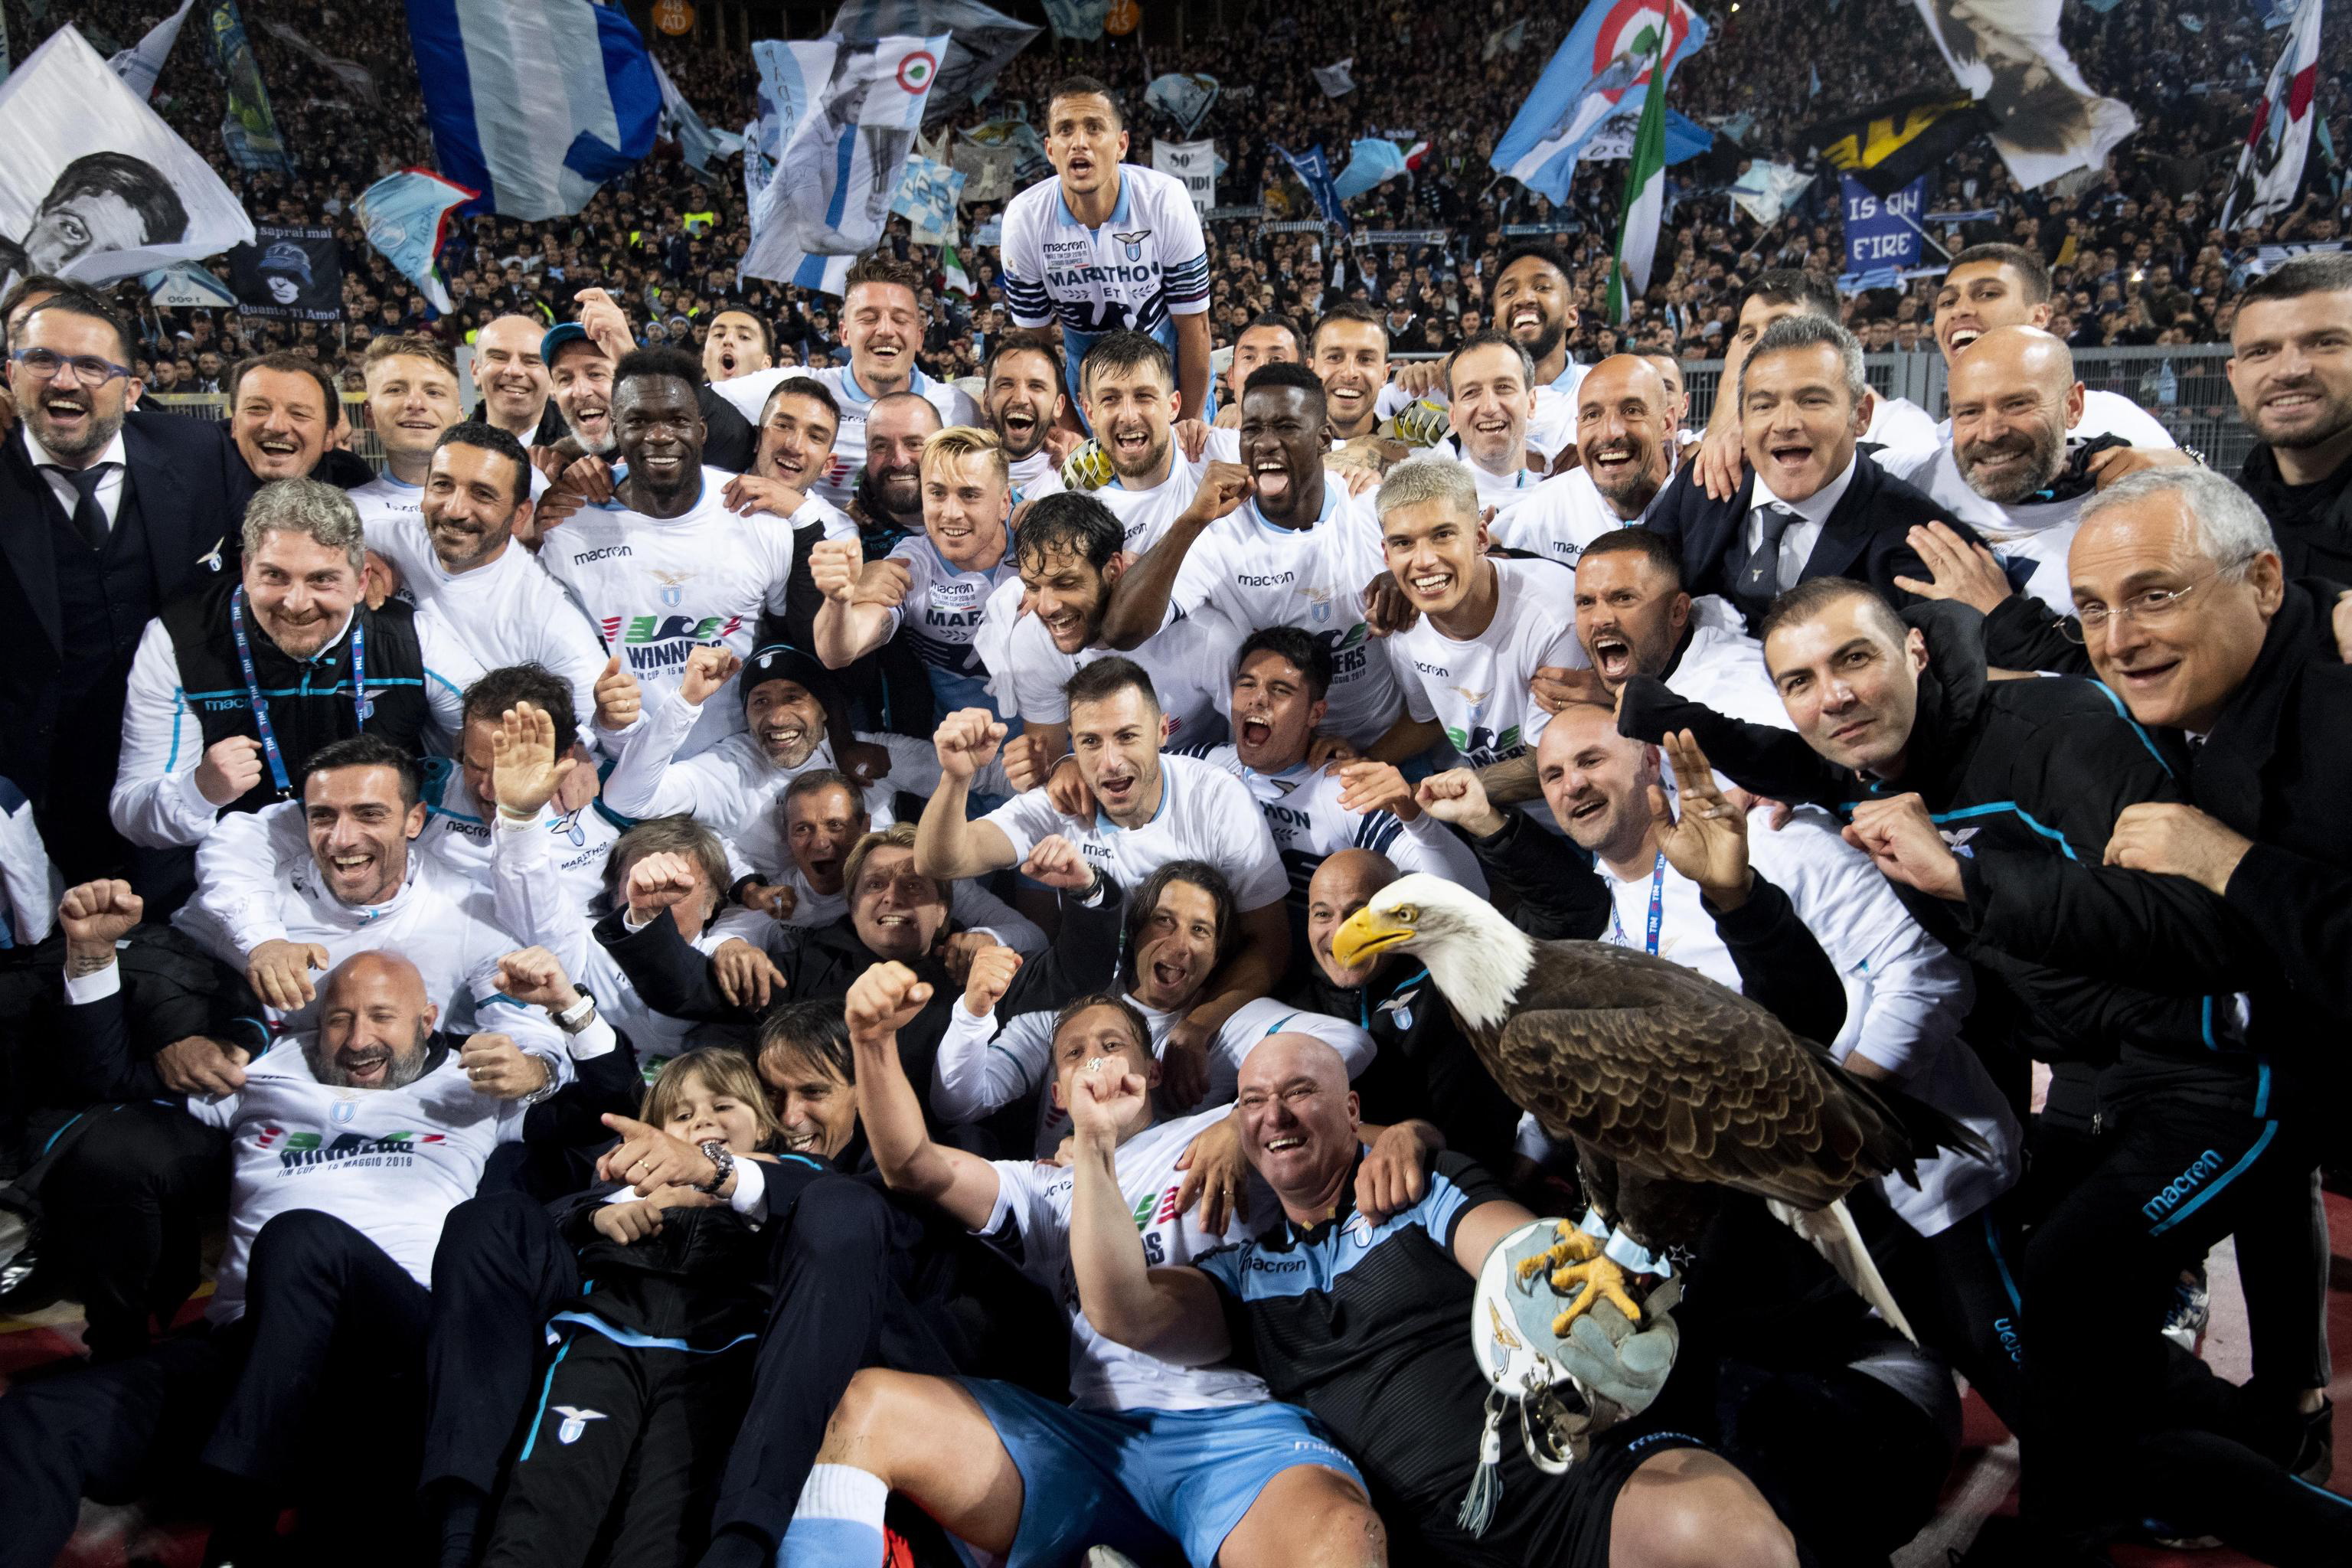 赛季意大利杯足球赛决赛中,拉齐奥队以2比0战胜亚特兰大队,夺得冠军